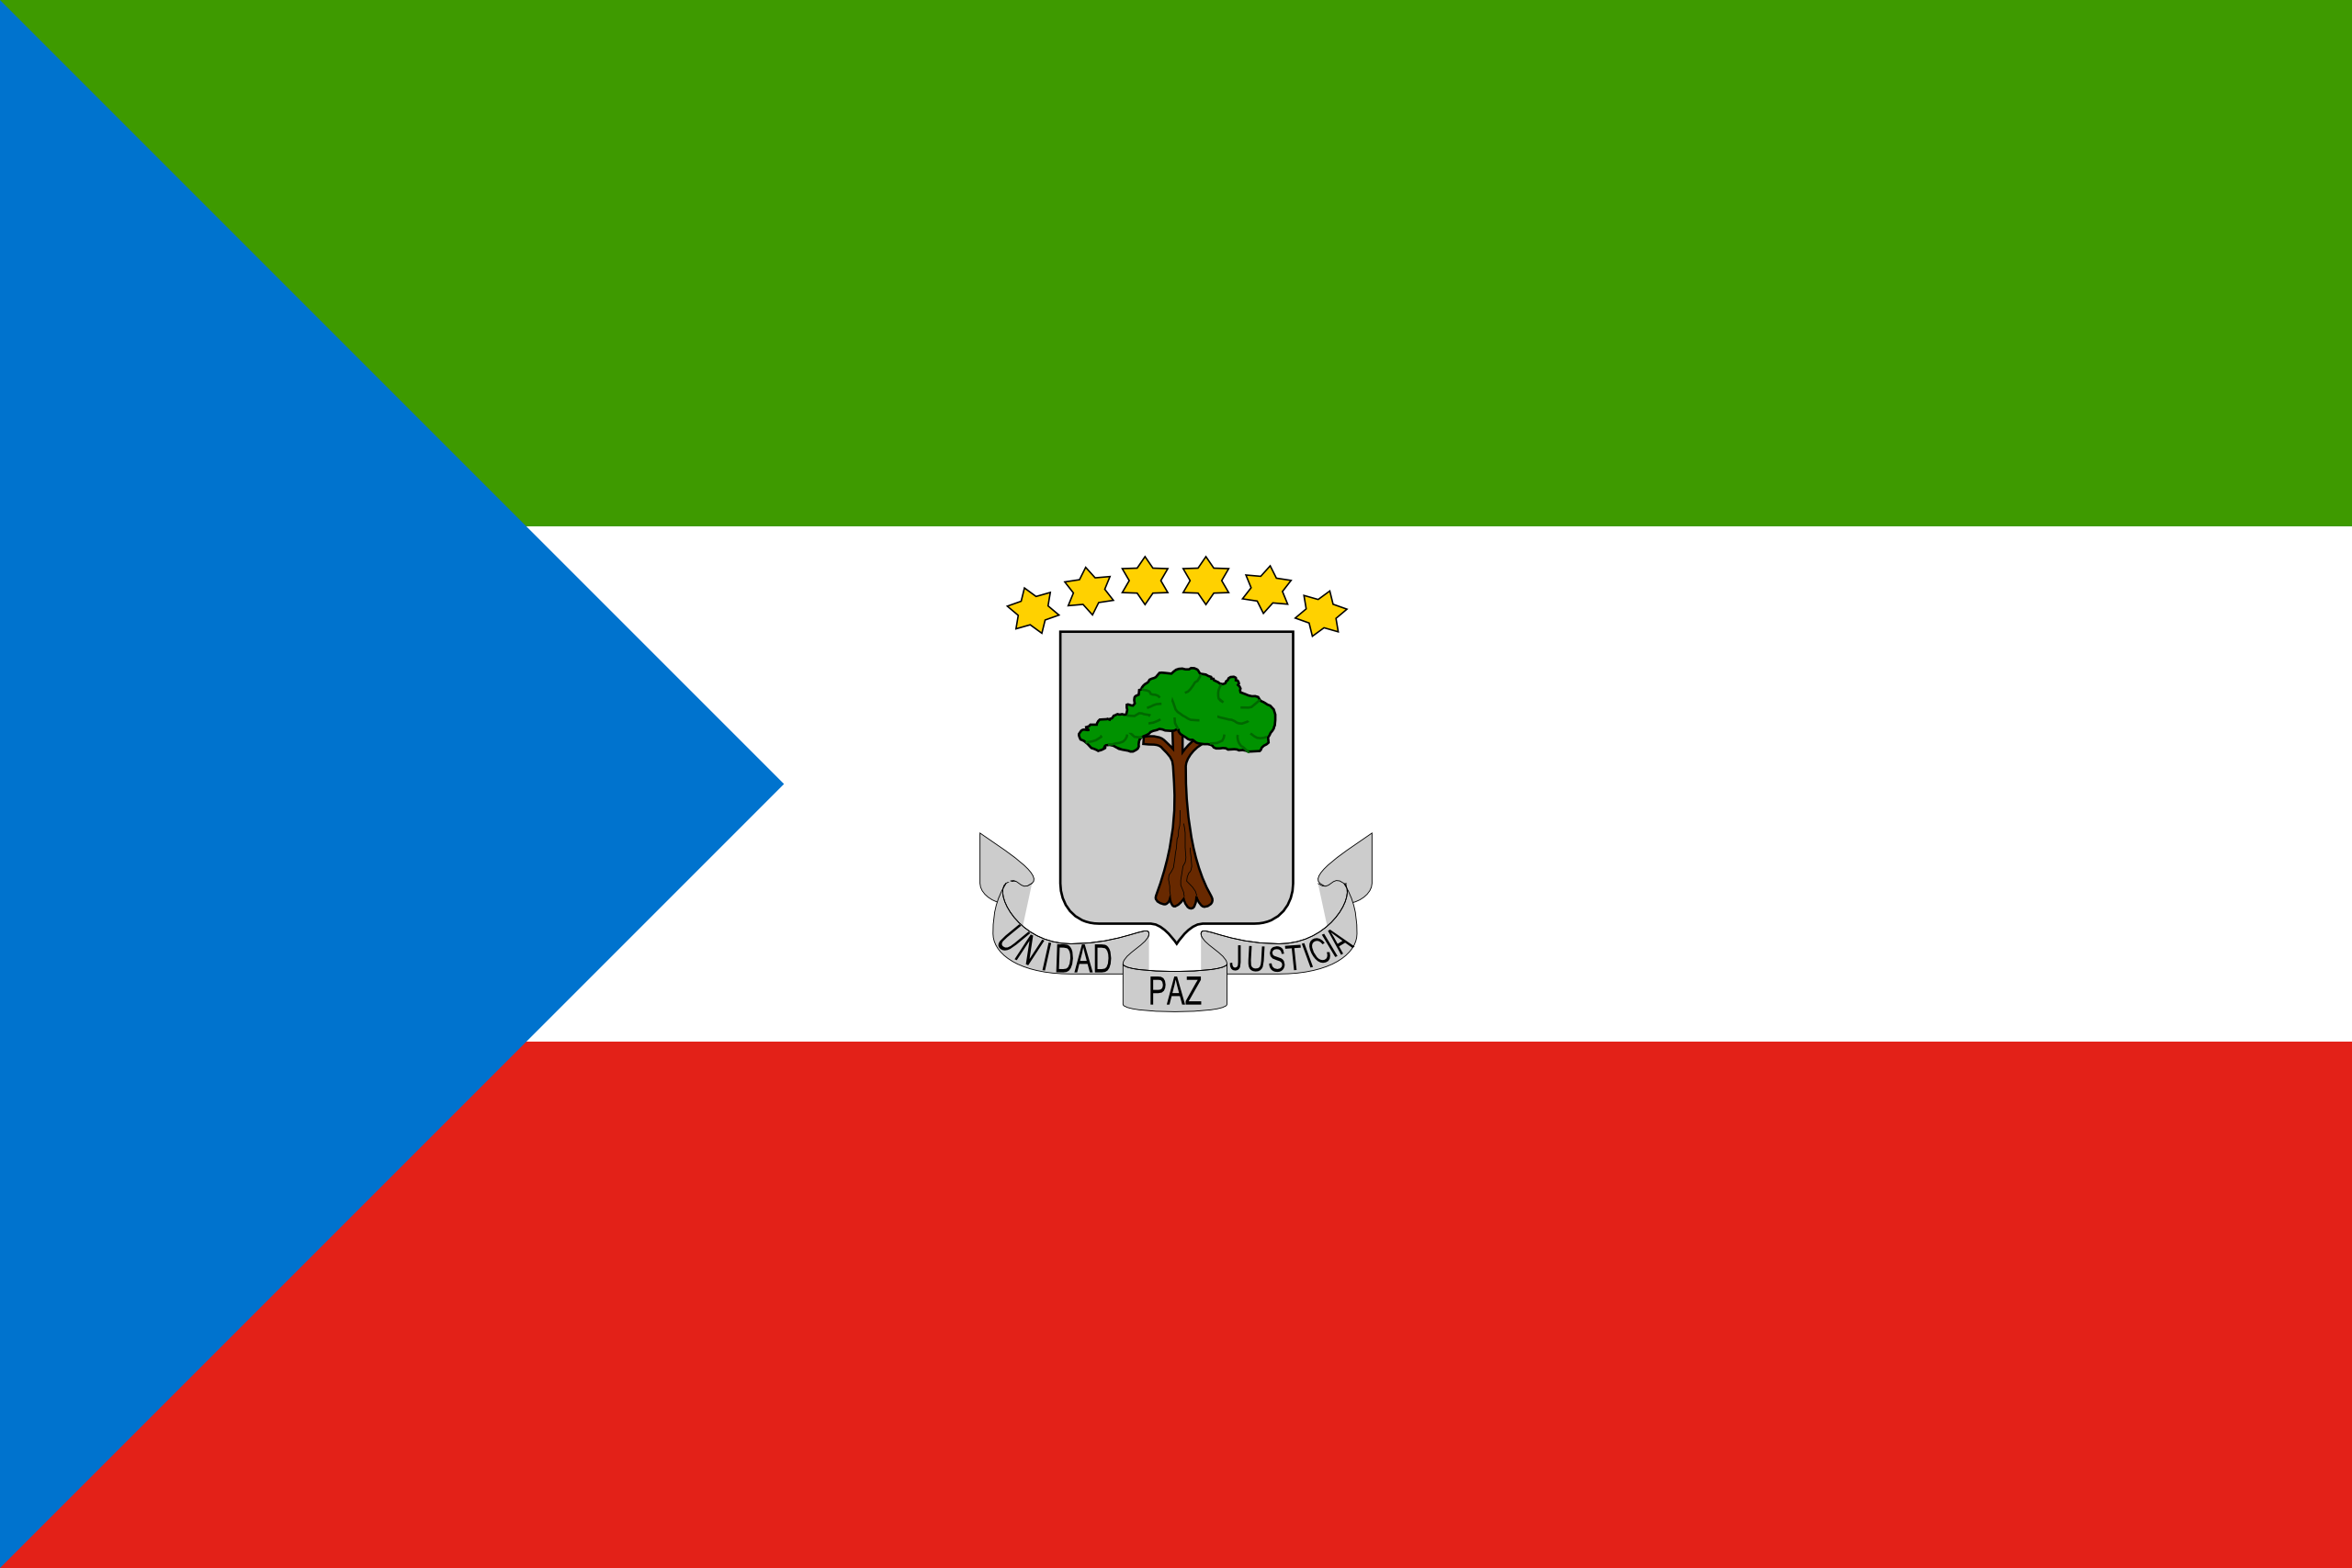 Equatorial Guinea's flag